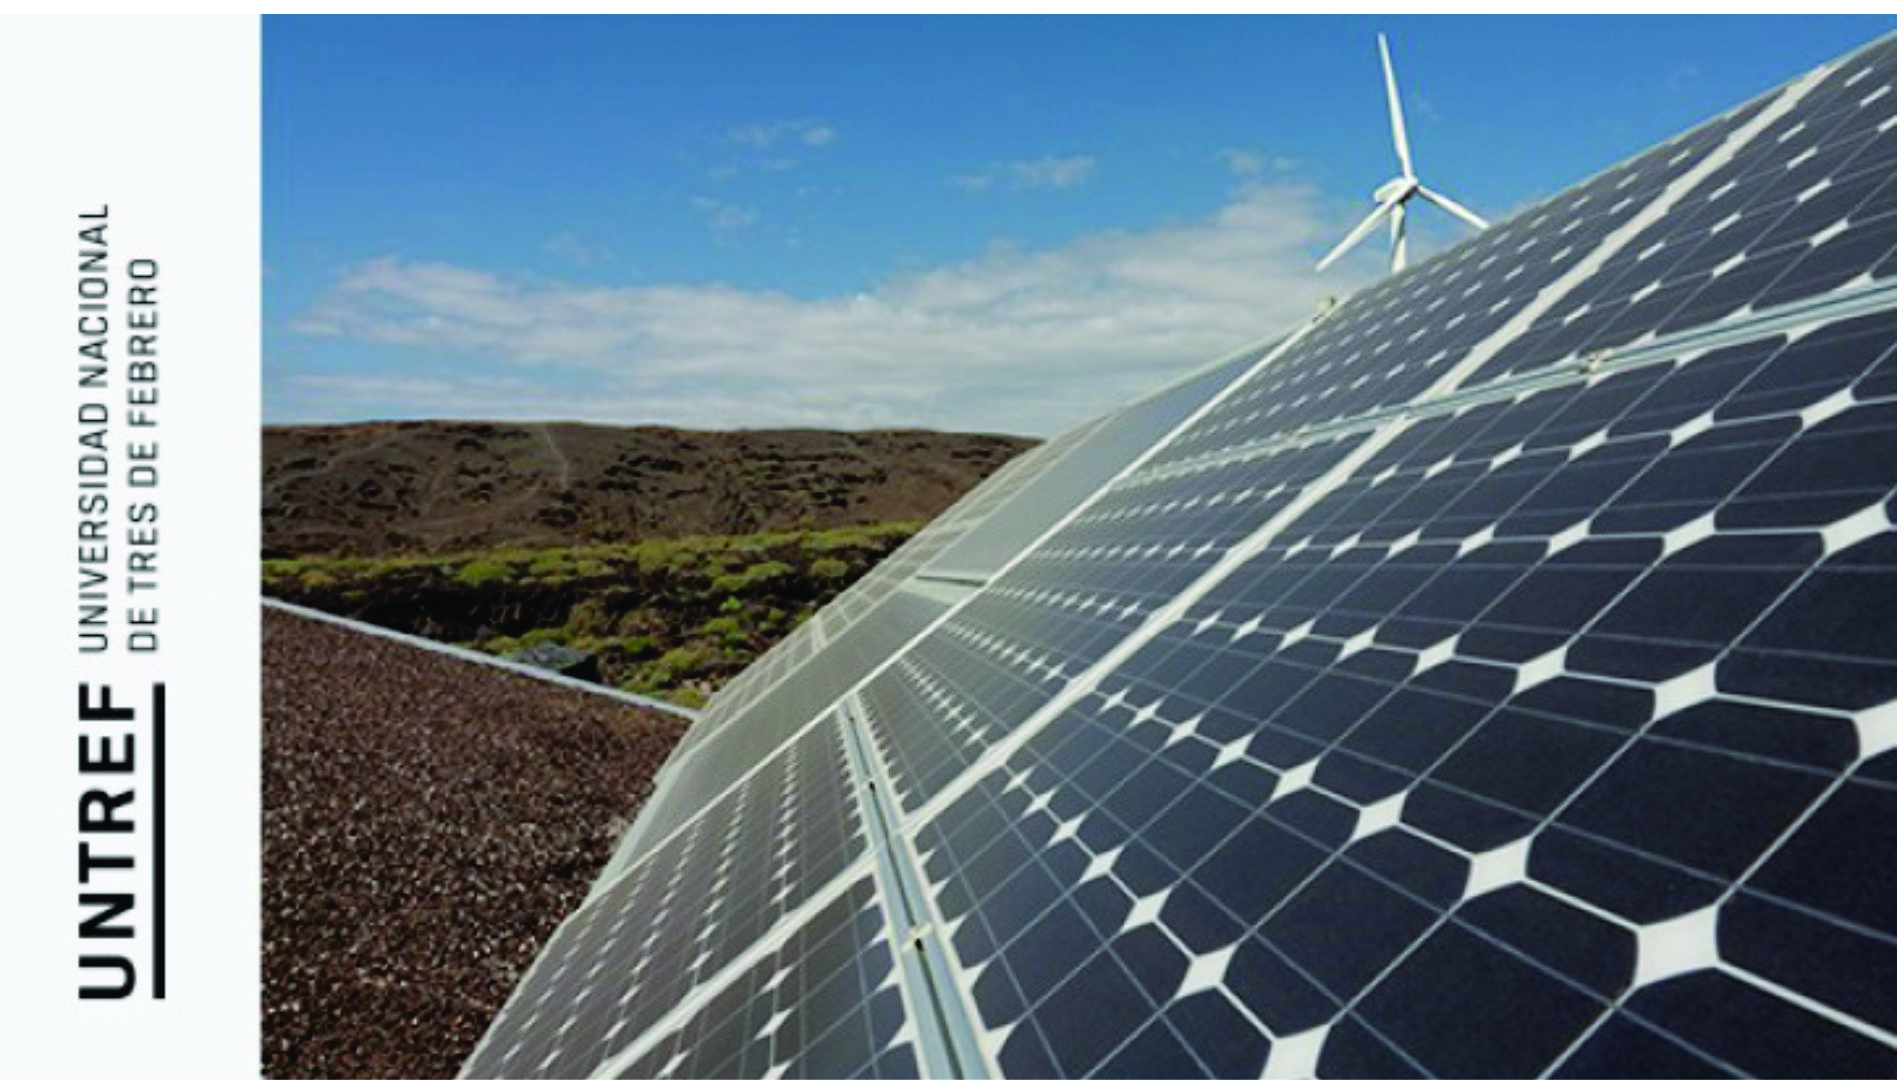 Diplomatura en Gestión de Energías Renovables: solar y eólica